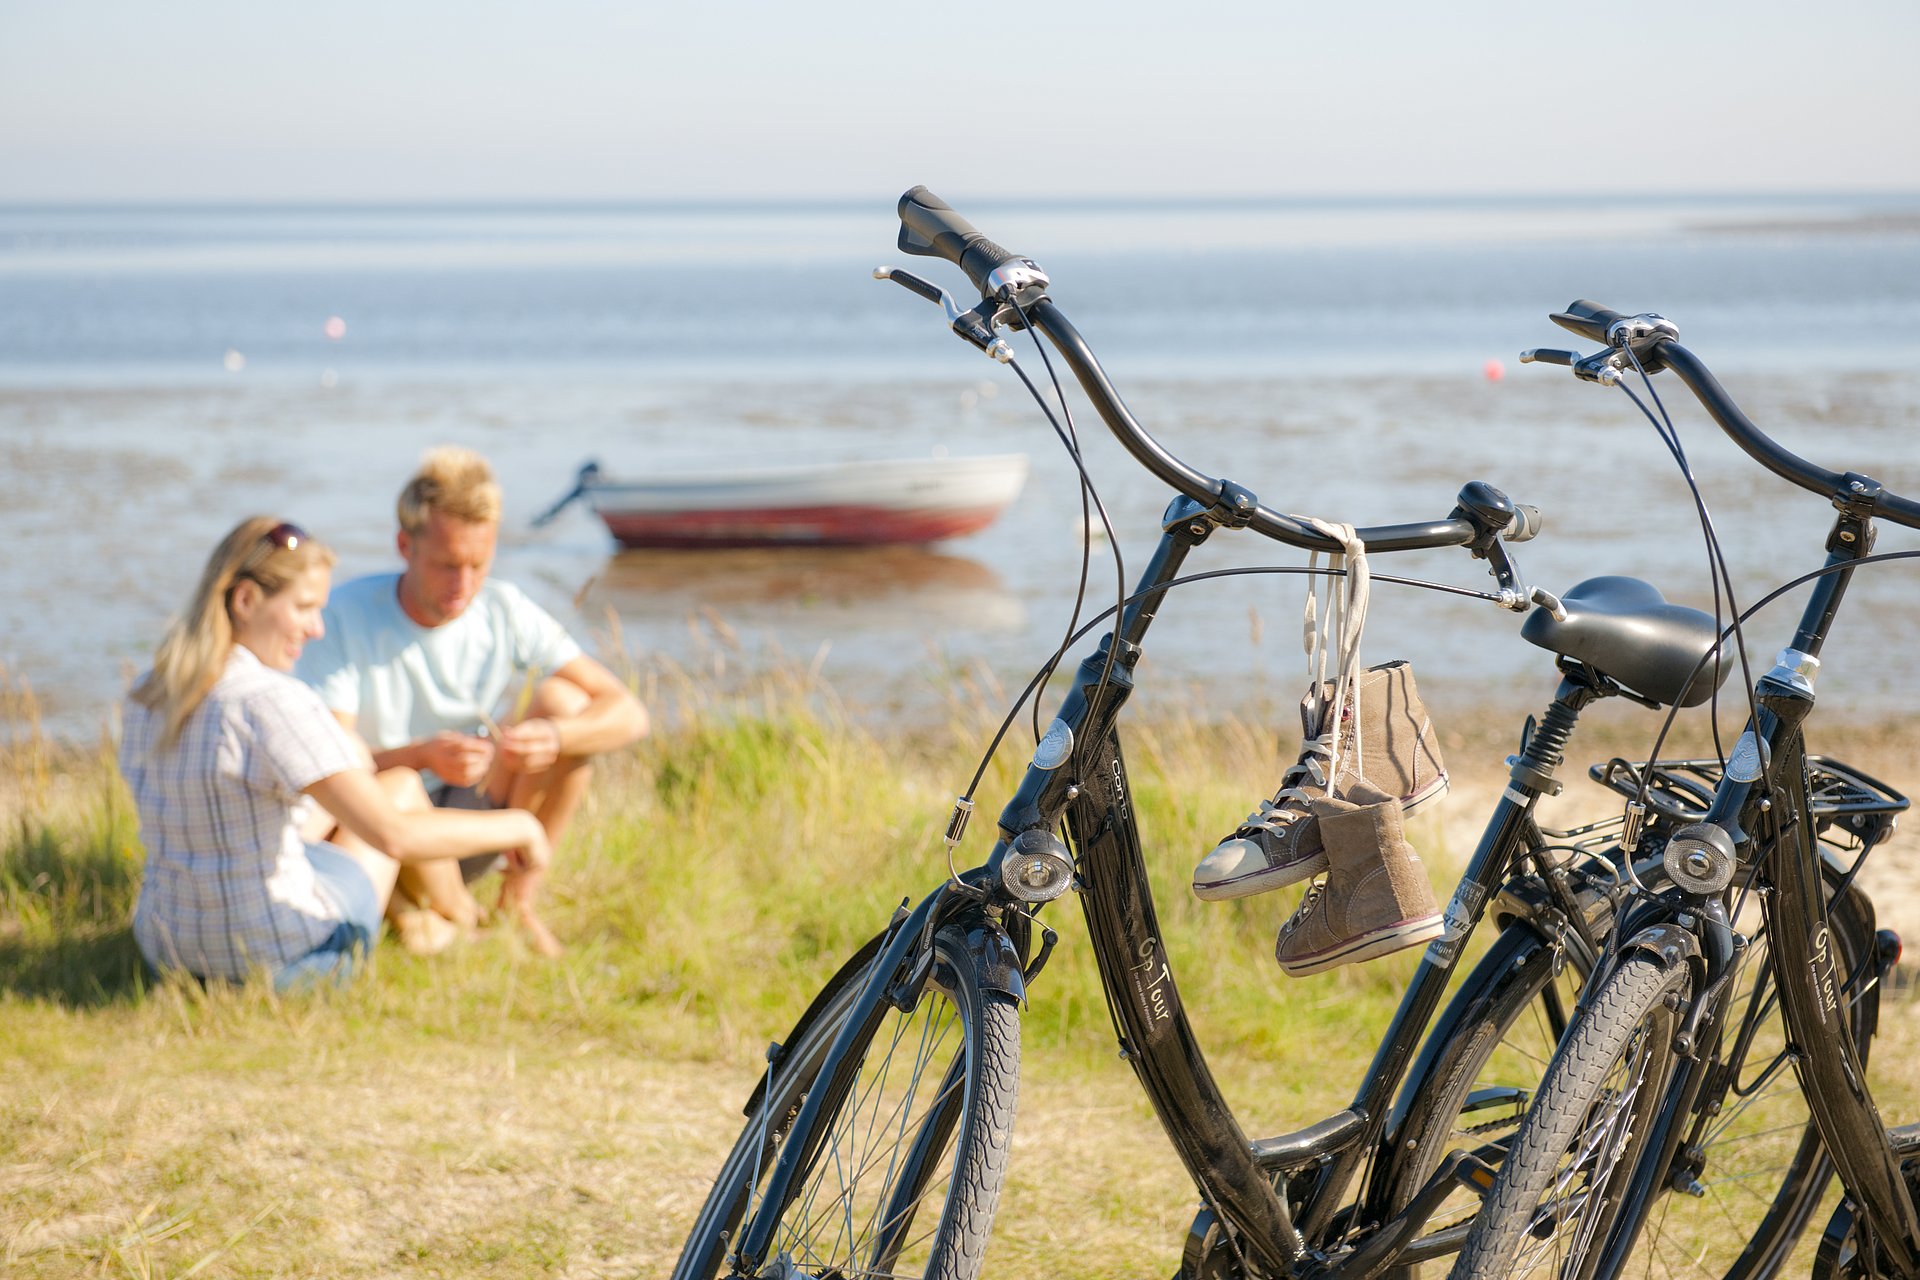 Pärchen sitzt auf Sylt am Strand, ihre Fahrräder im Vordergrund